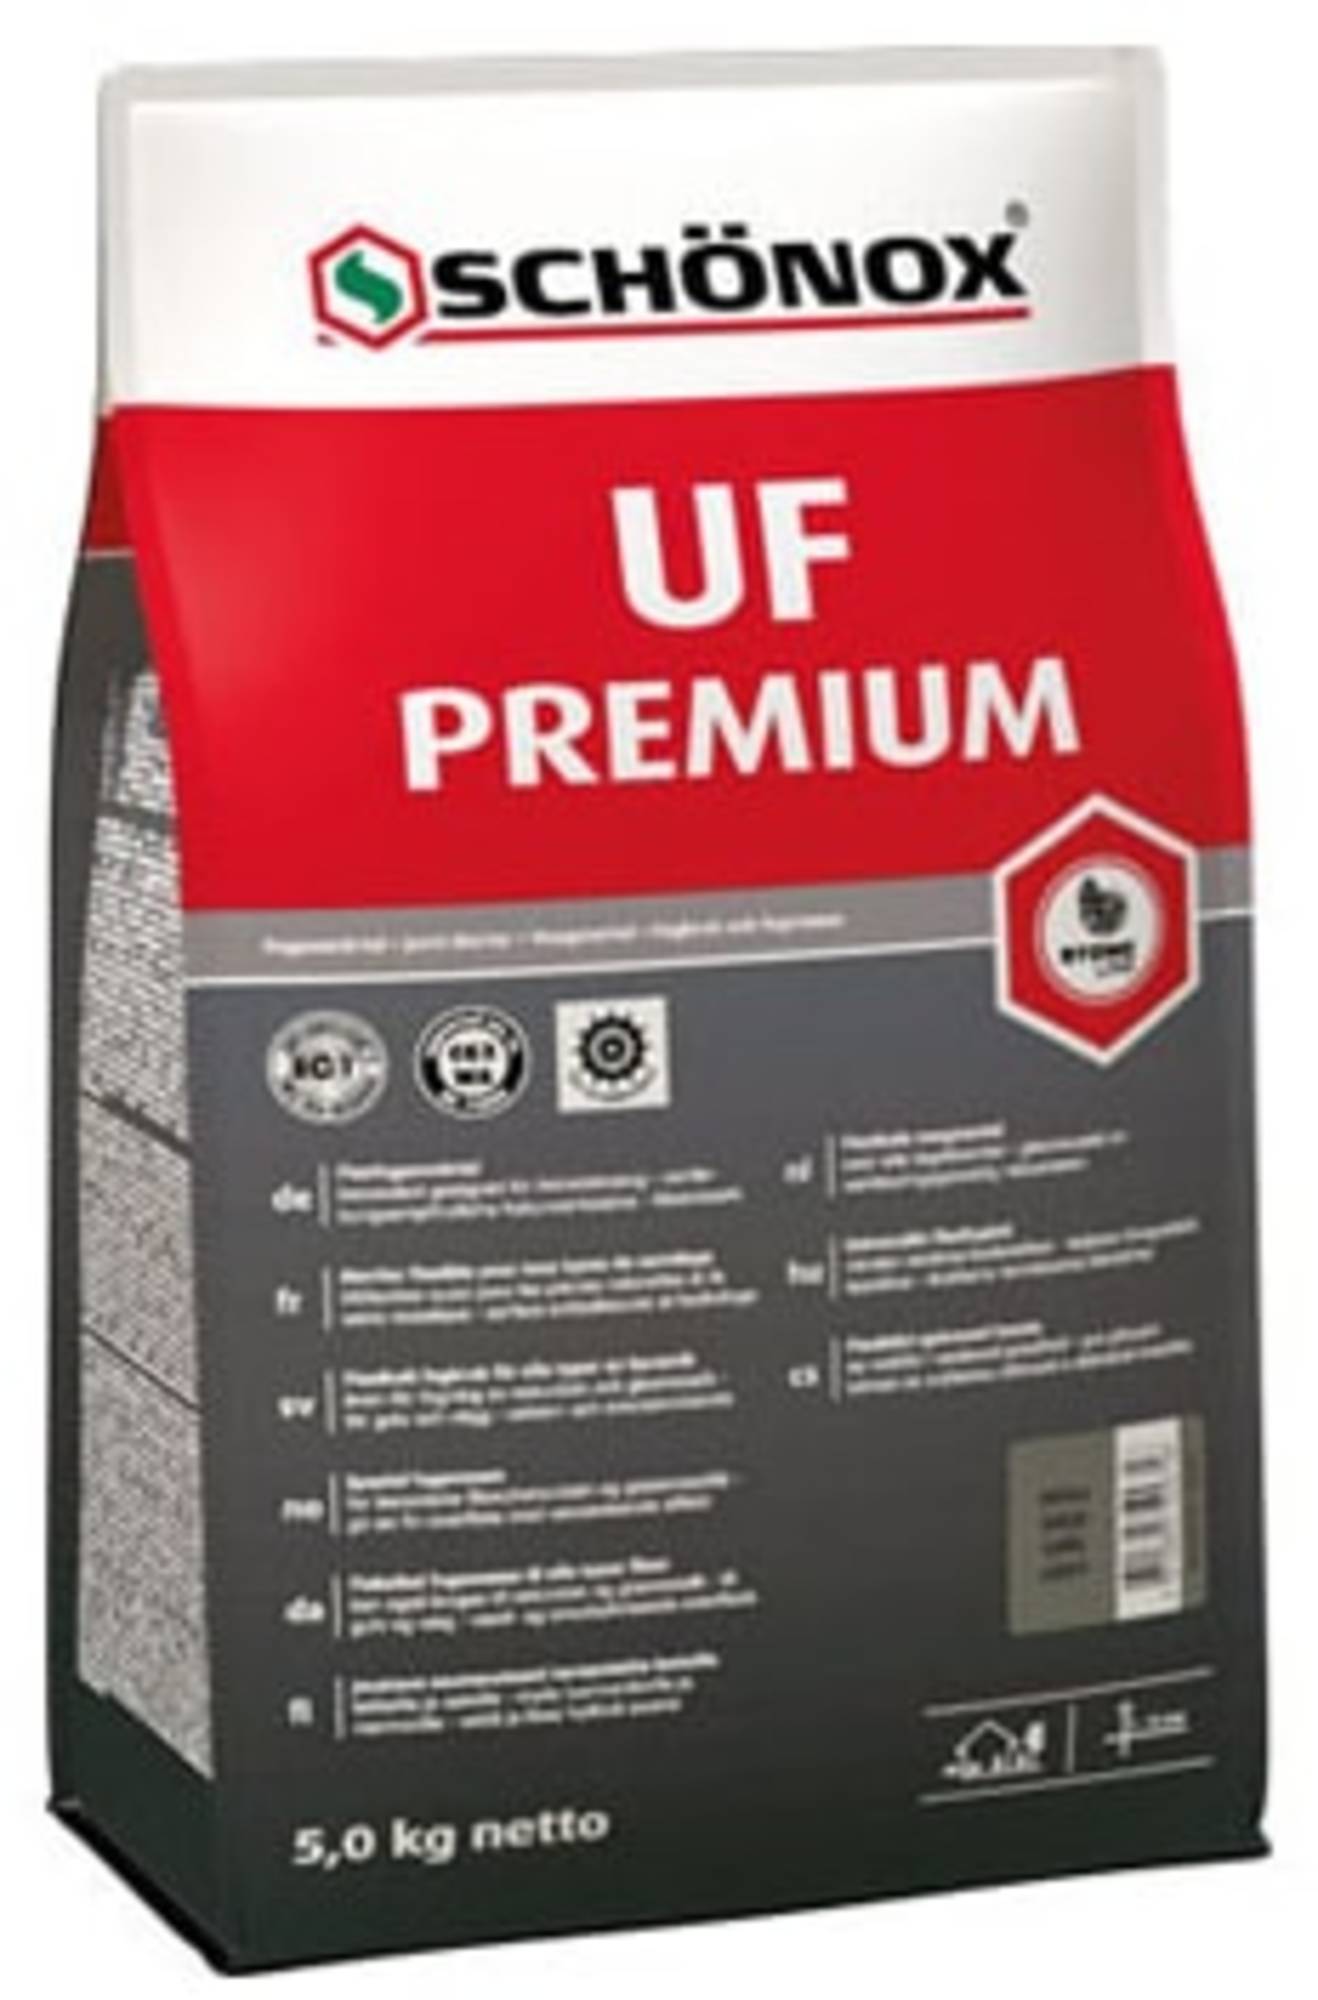 Schonox UF premium donkergrijs 5 kg voegmiddel